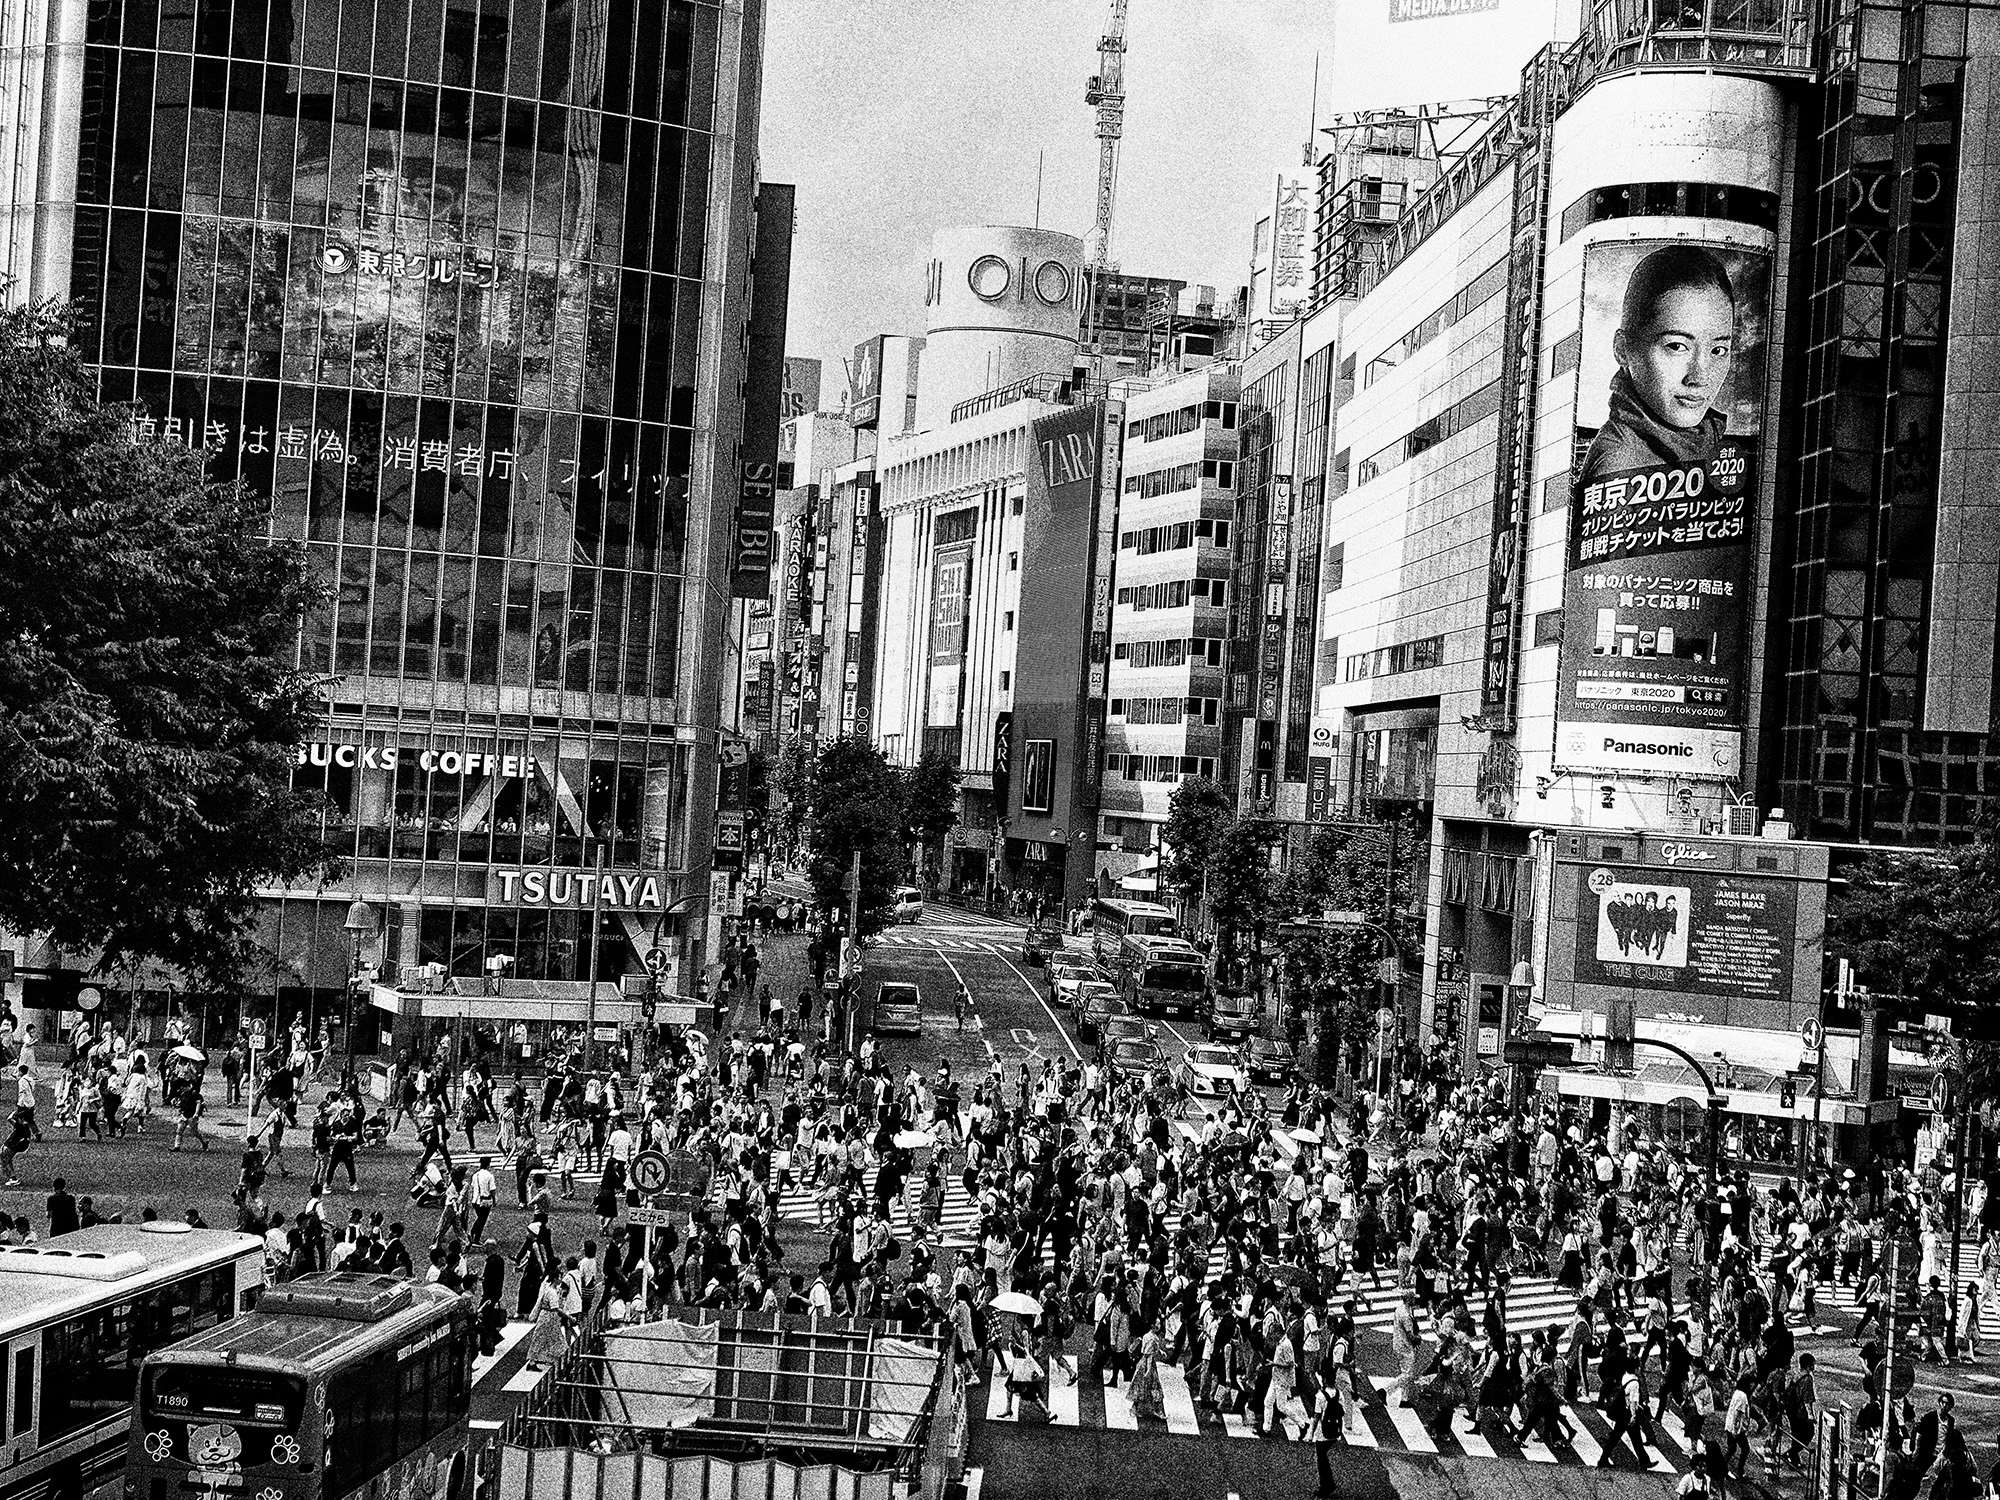 森山大道の写真が渋谷をジャック。山田智和も参加の「SHIBUYA 